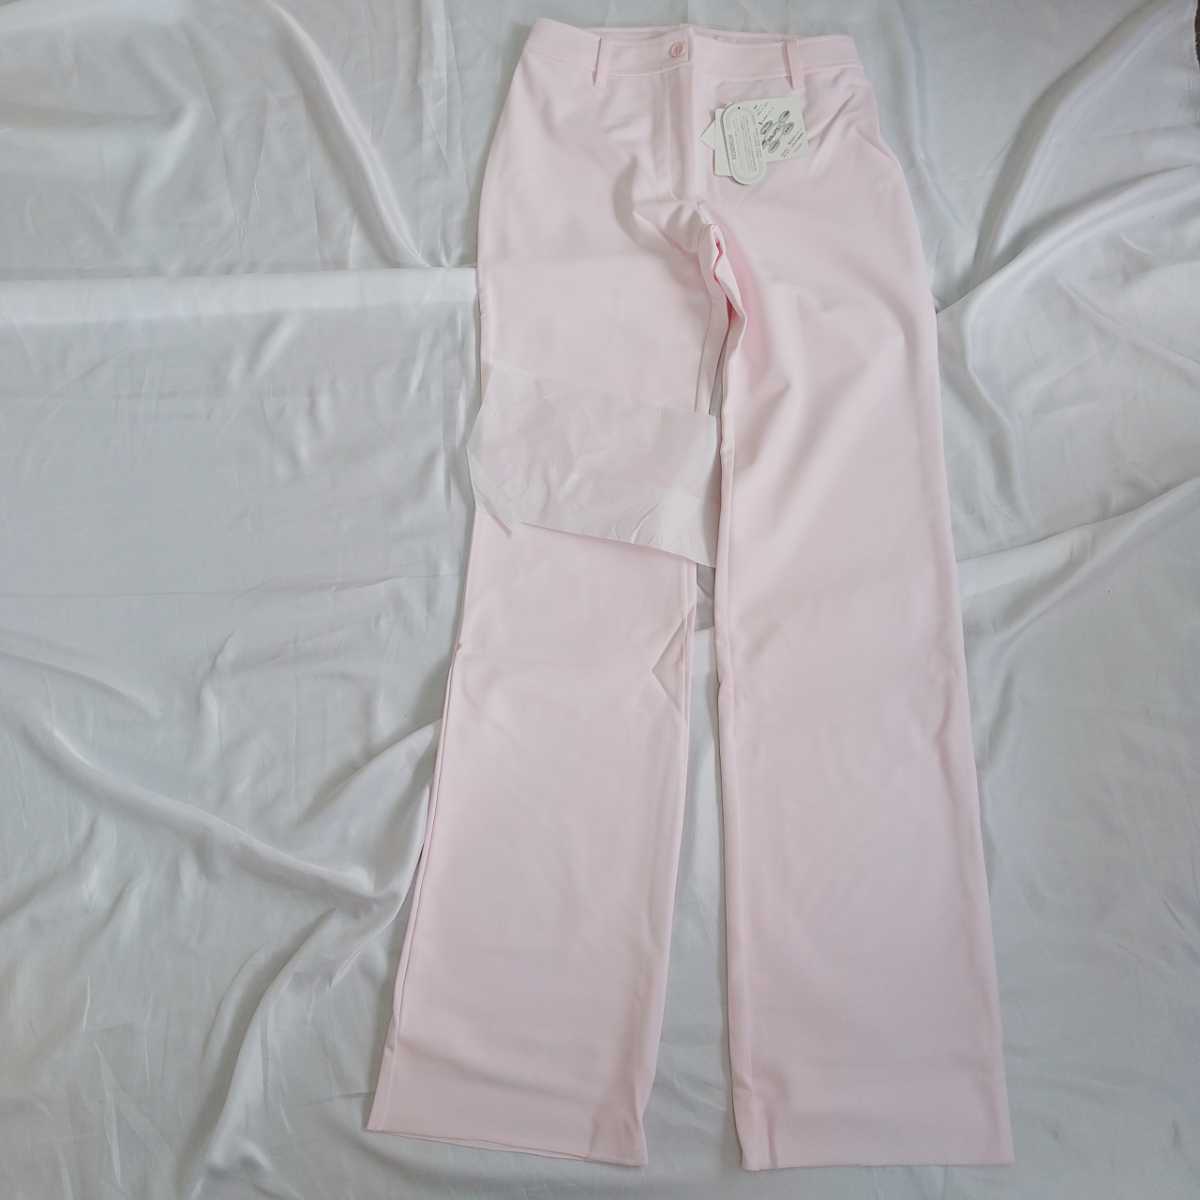 OS50 [ не использовался новый товар 5 надеты комплект ] костюмированная игра медсестра брюки S размер Anne famie розовый ботинки Kuttner s одежда зуб . санитария . уход за детьми уход сестринское дело сырой 